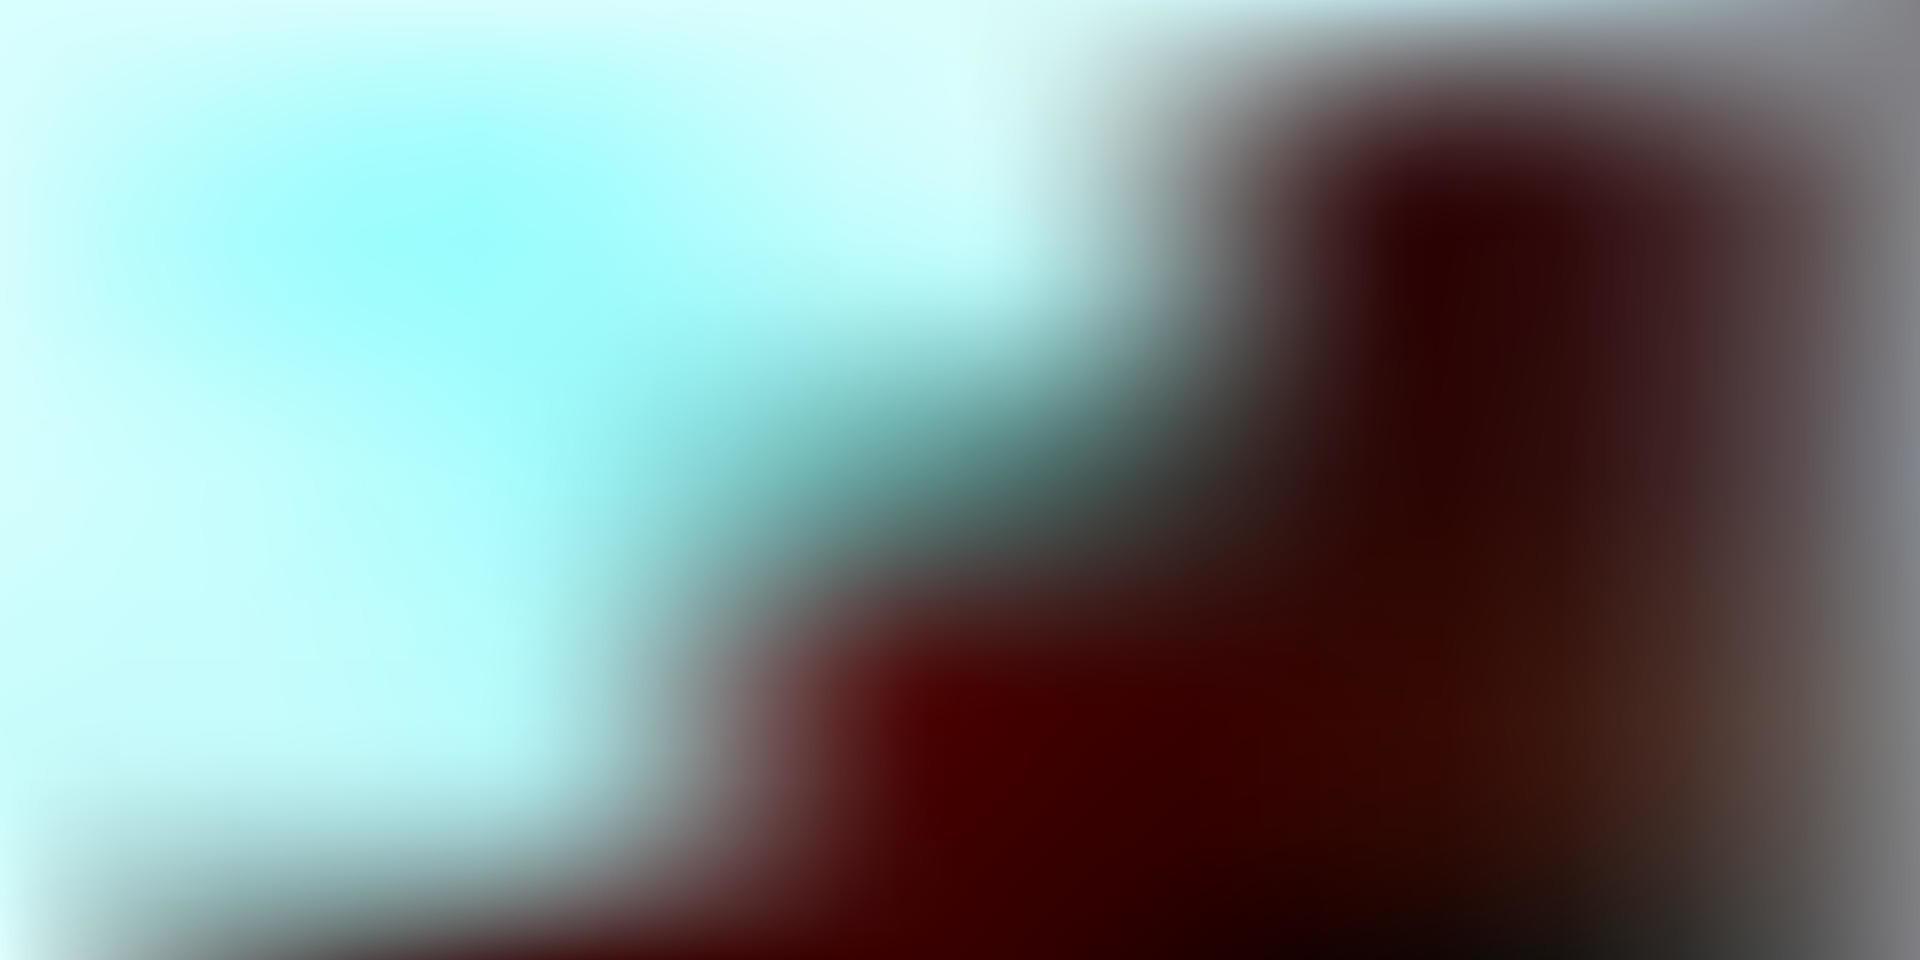 Dark blue, red vector blurred pattern.